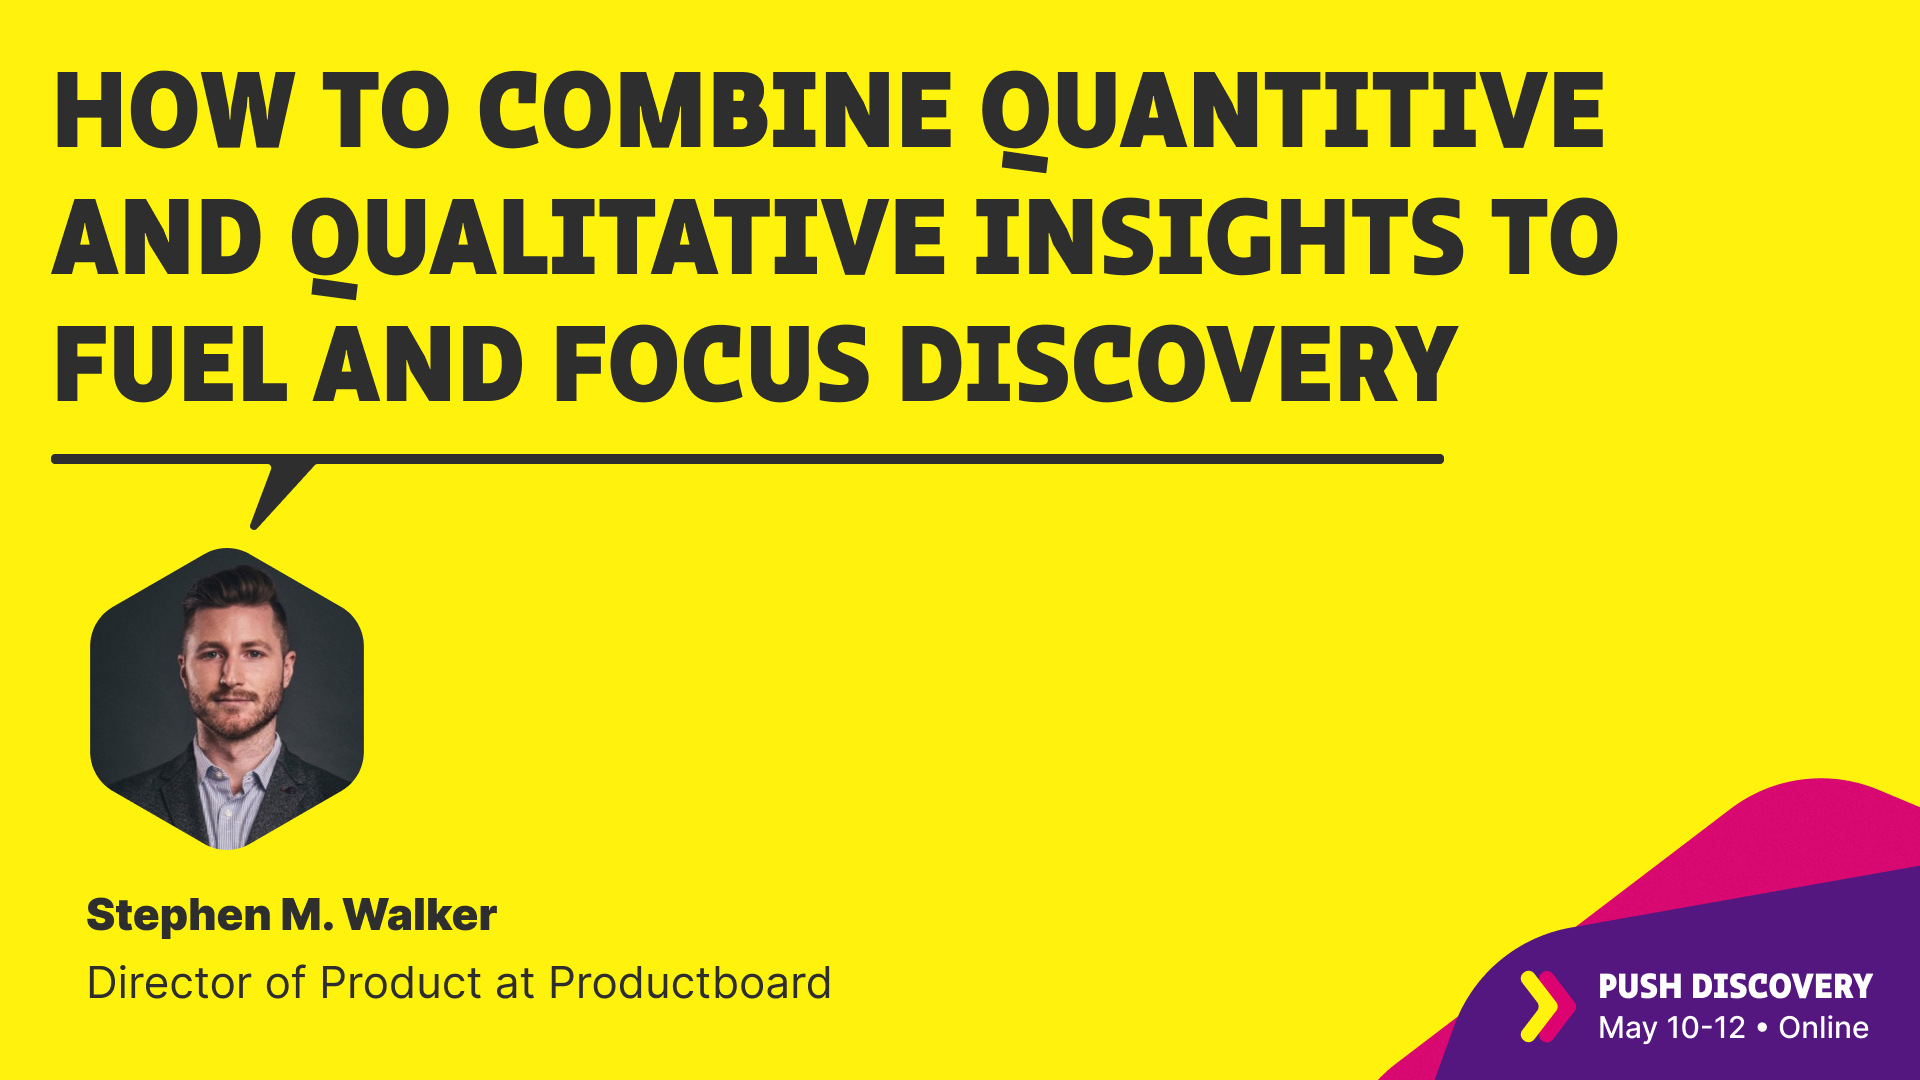 Combine quantitative & qualitative insights to focus and fuel discovery